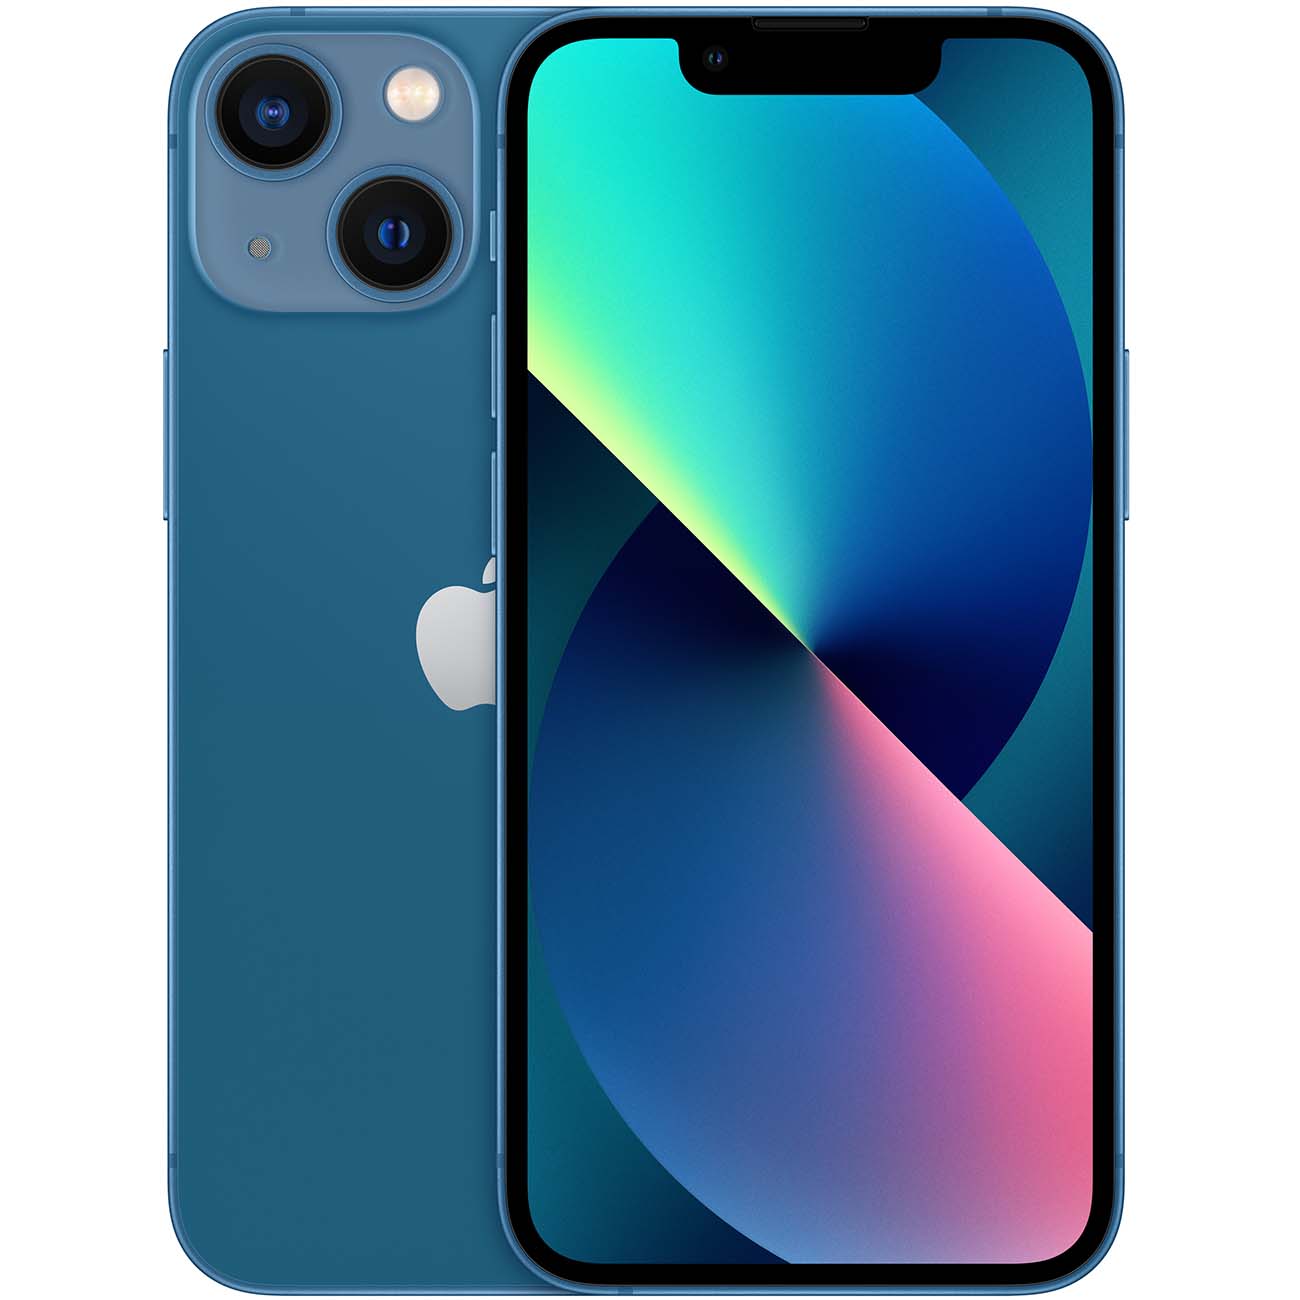 Купить смартфон apple iphone 13 mini 128gb blue Apple iPhone 13 mini в официальном магазине Apple, Samsung, Xiaomi. iPixel.ru Купить, заказ, кредит, рассрочка, отзывы,  характеристики, цена,  фотографии, в подарок.